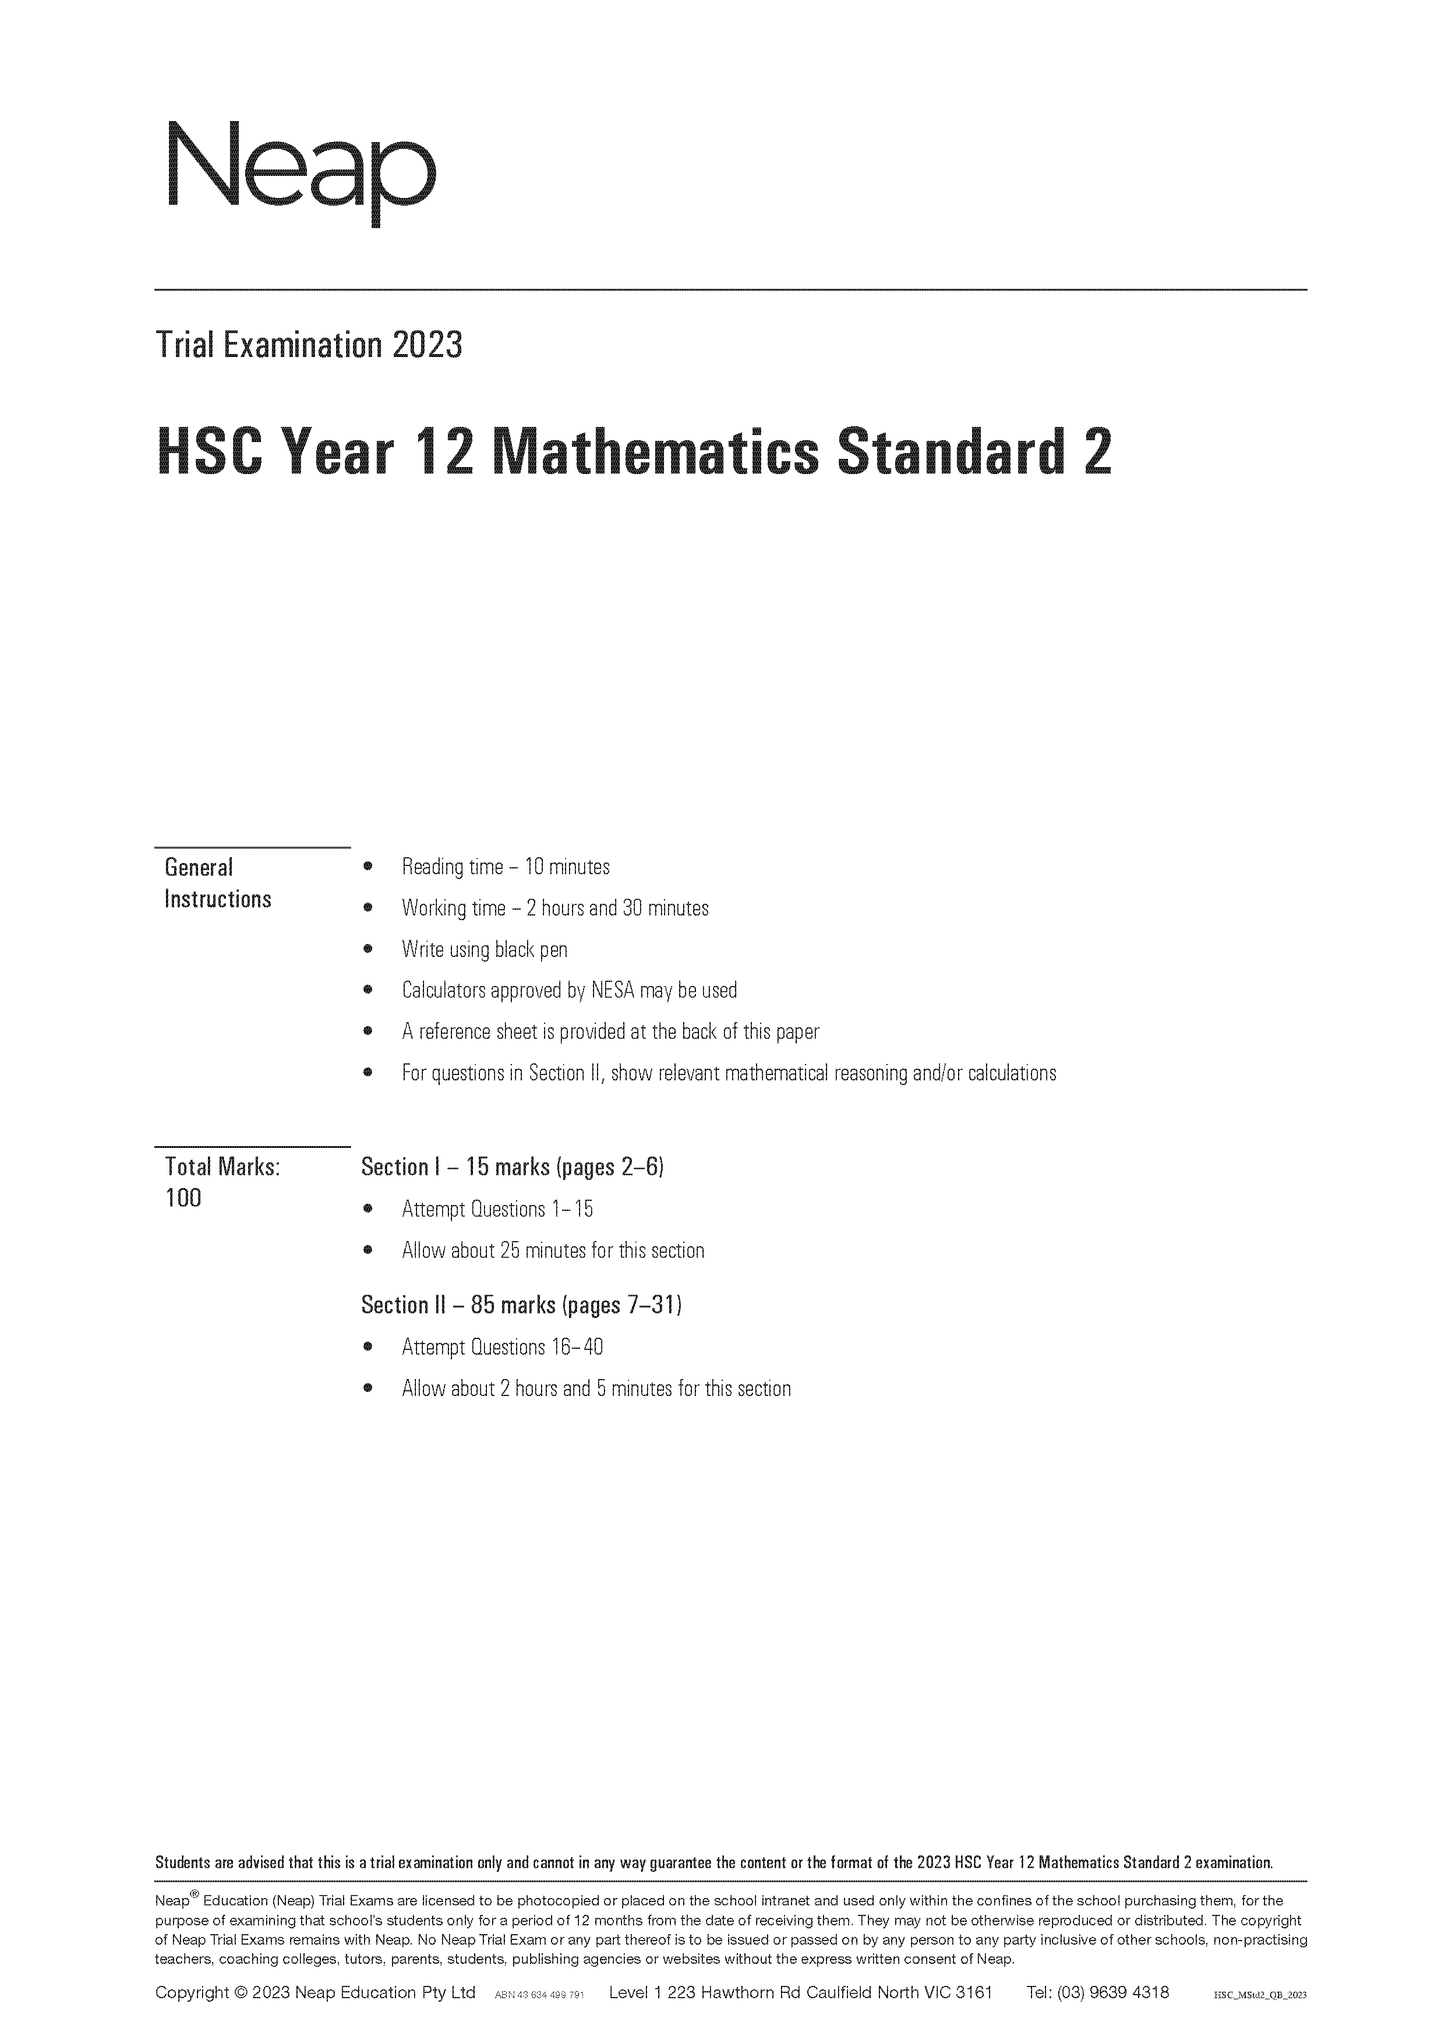 Neap Trial Exam: 2023 HSC Year 12 Maths Standard 2